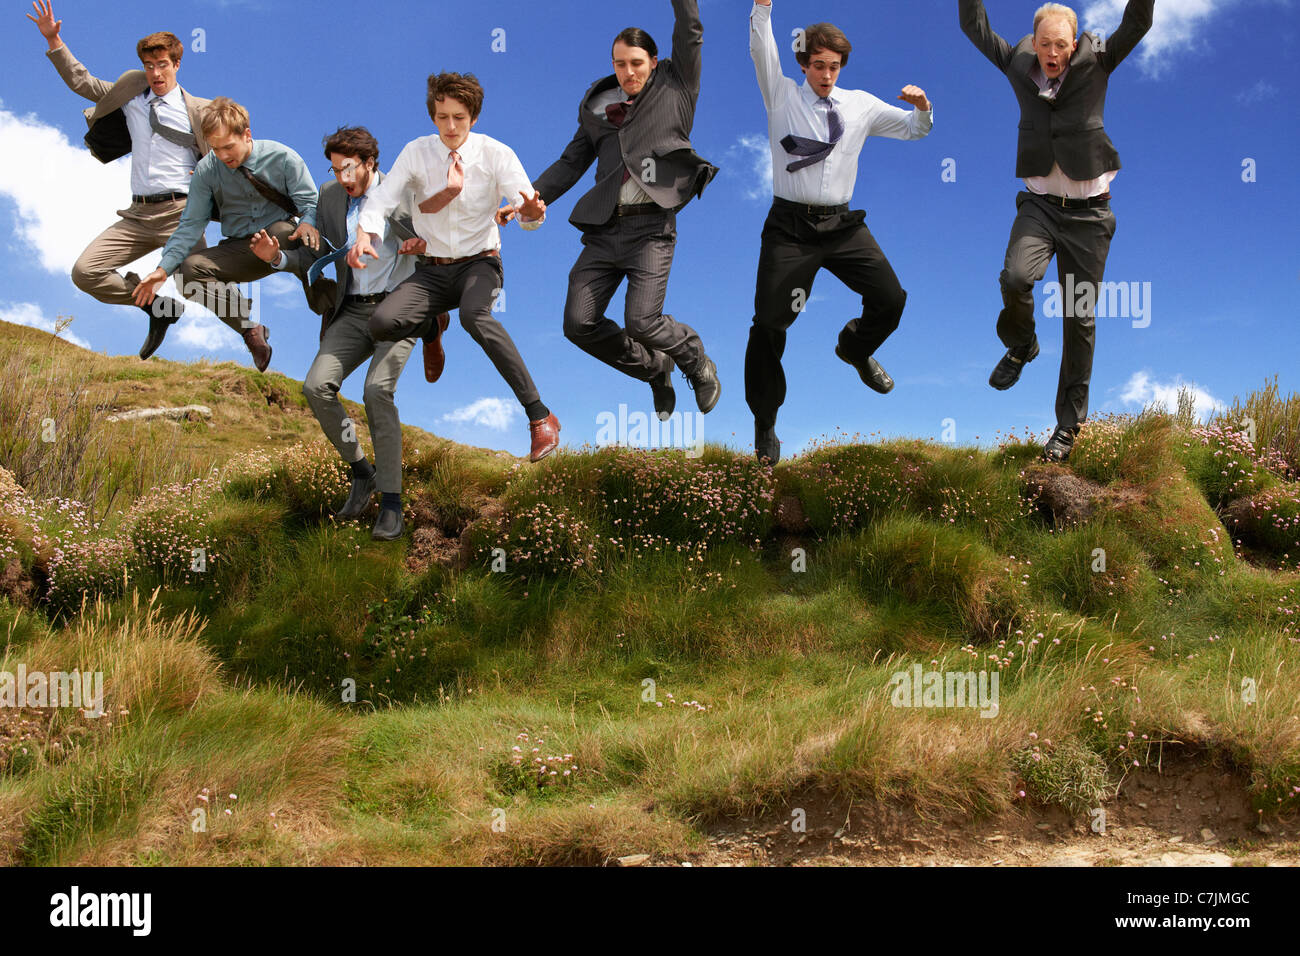 Los empresarios saltar de alegría al aire libre Foto de stock